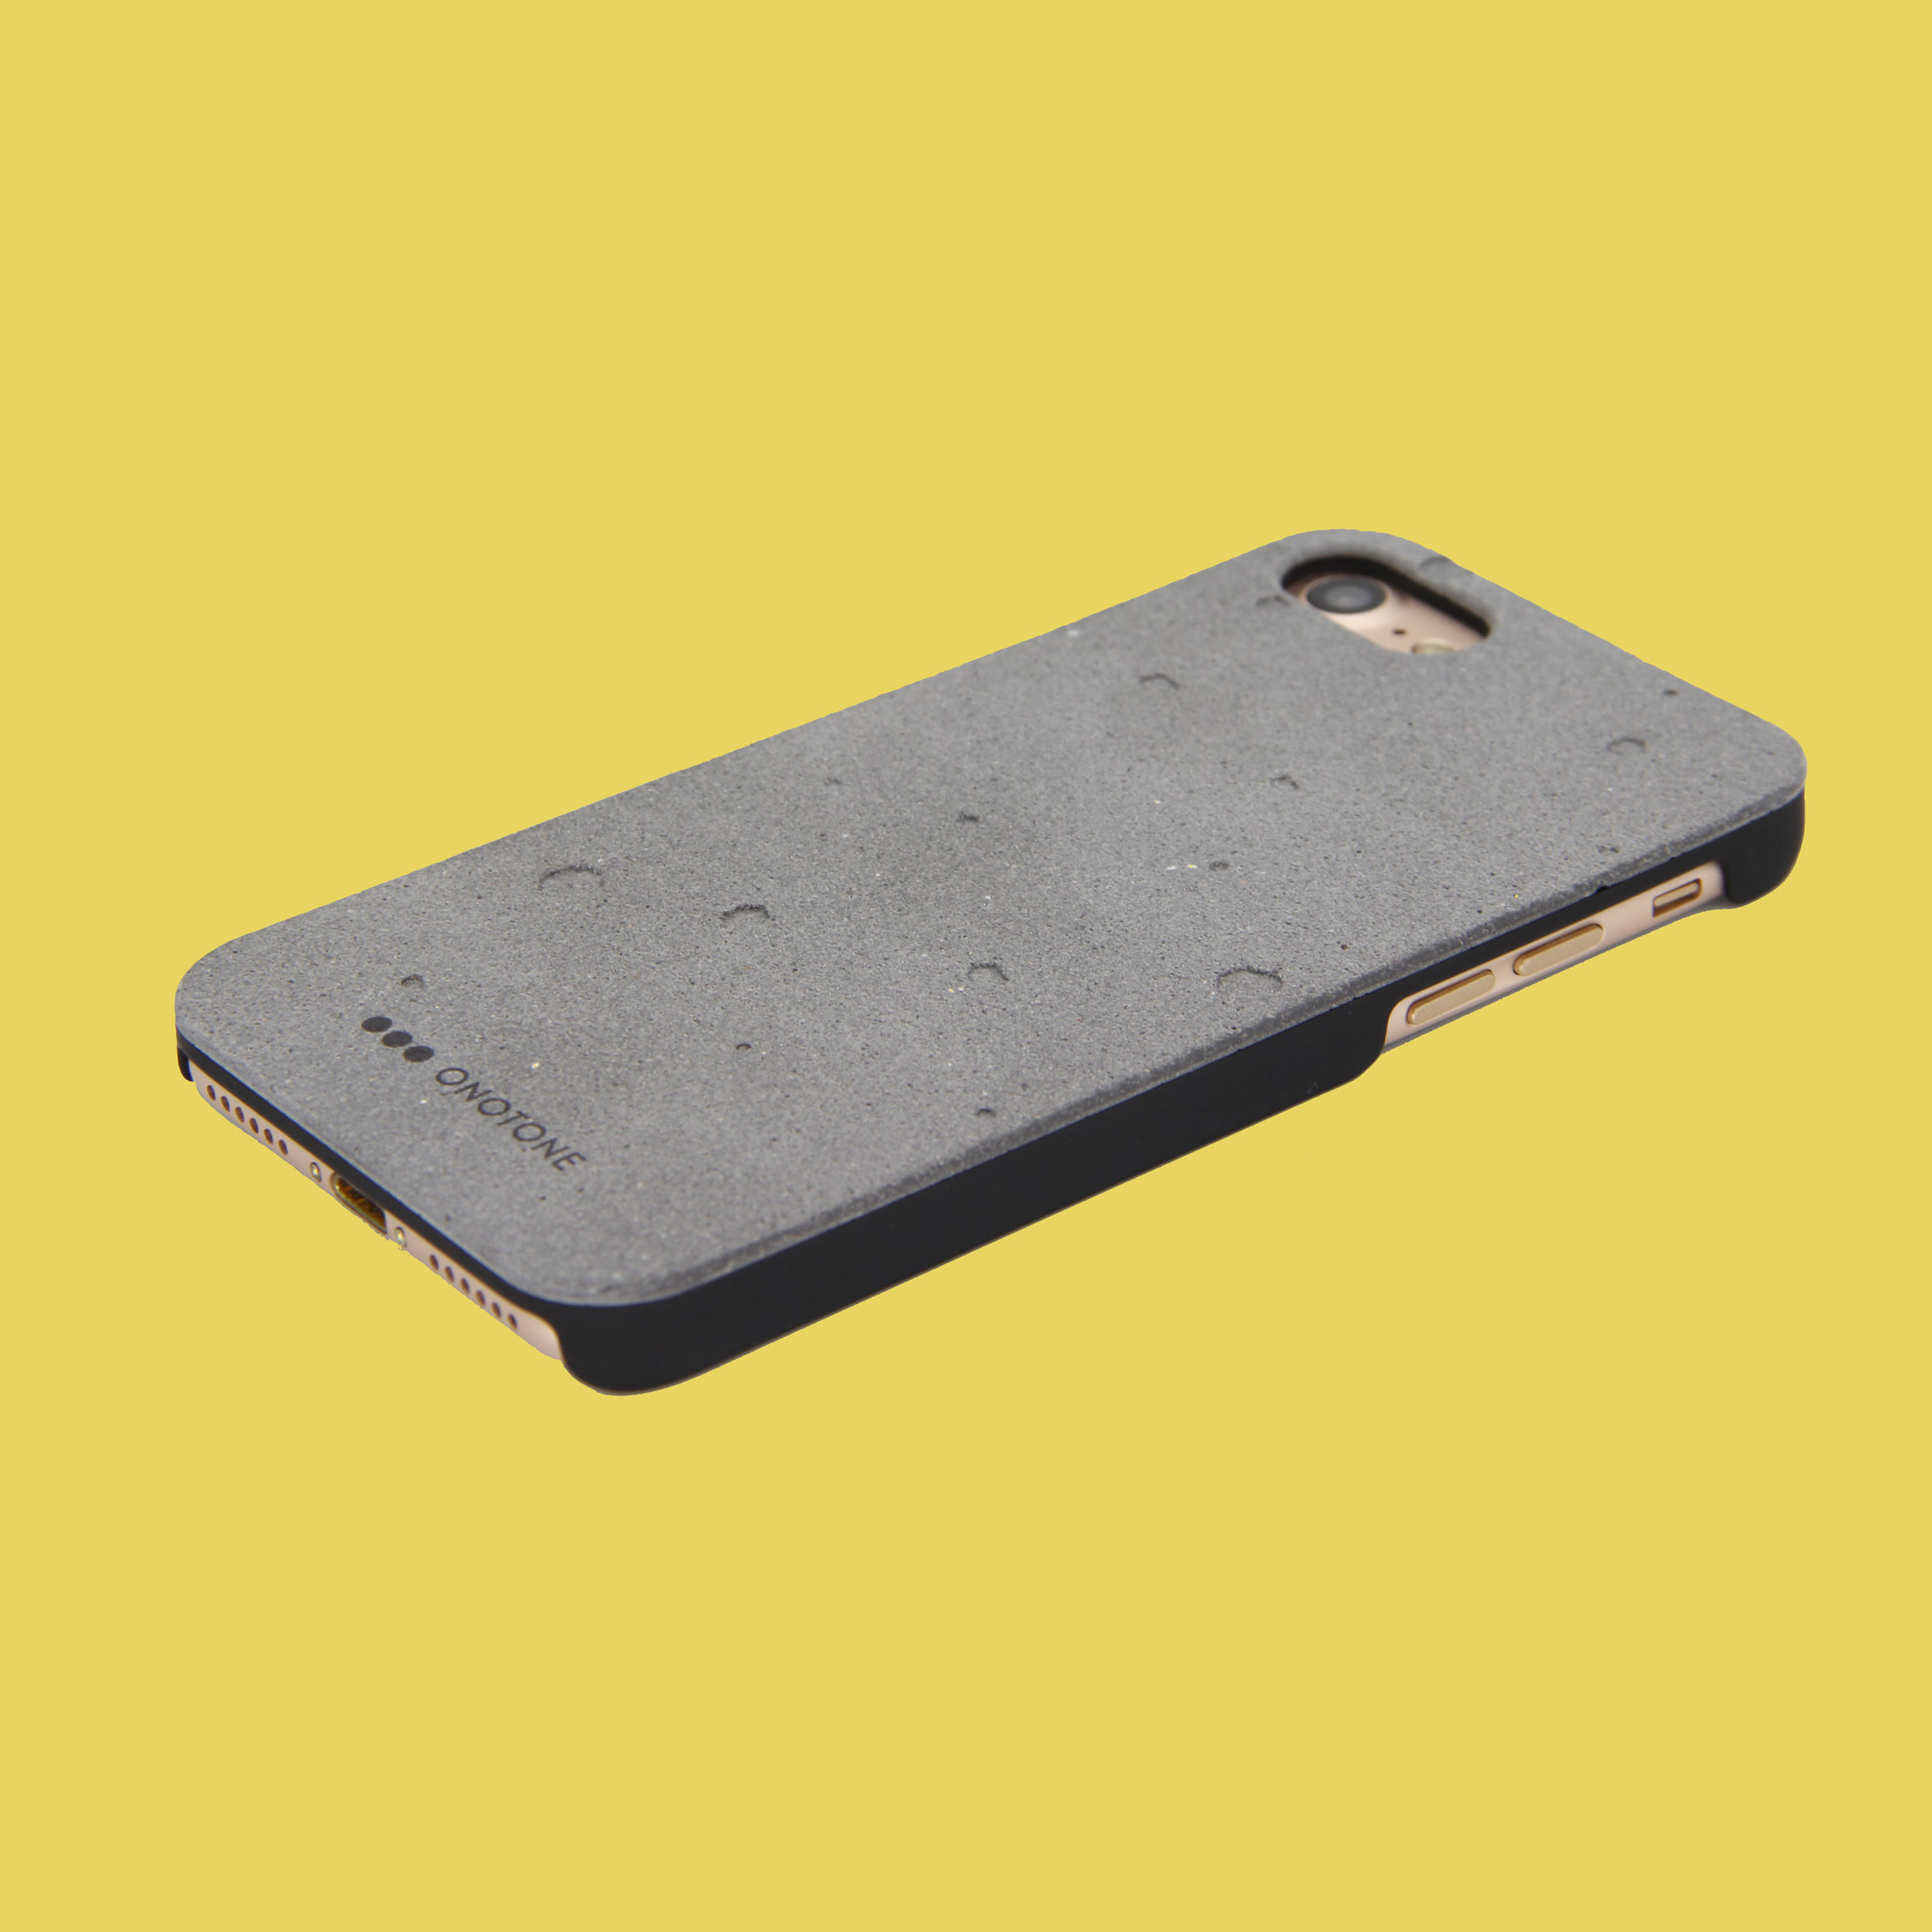 ONOTONE concrete iPhone case